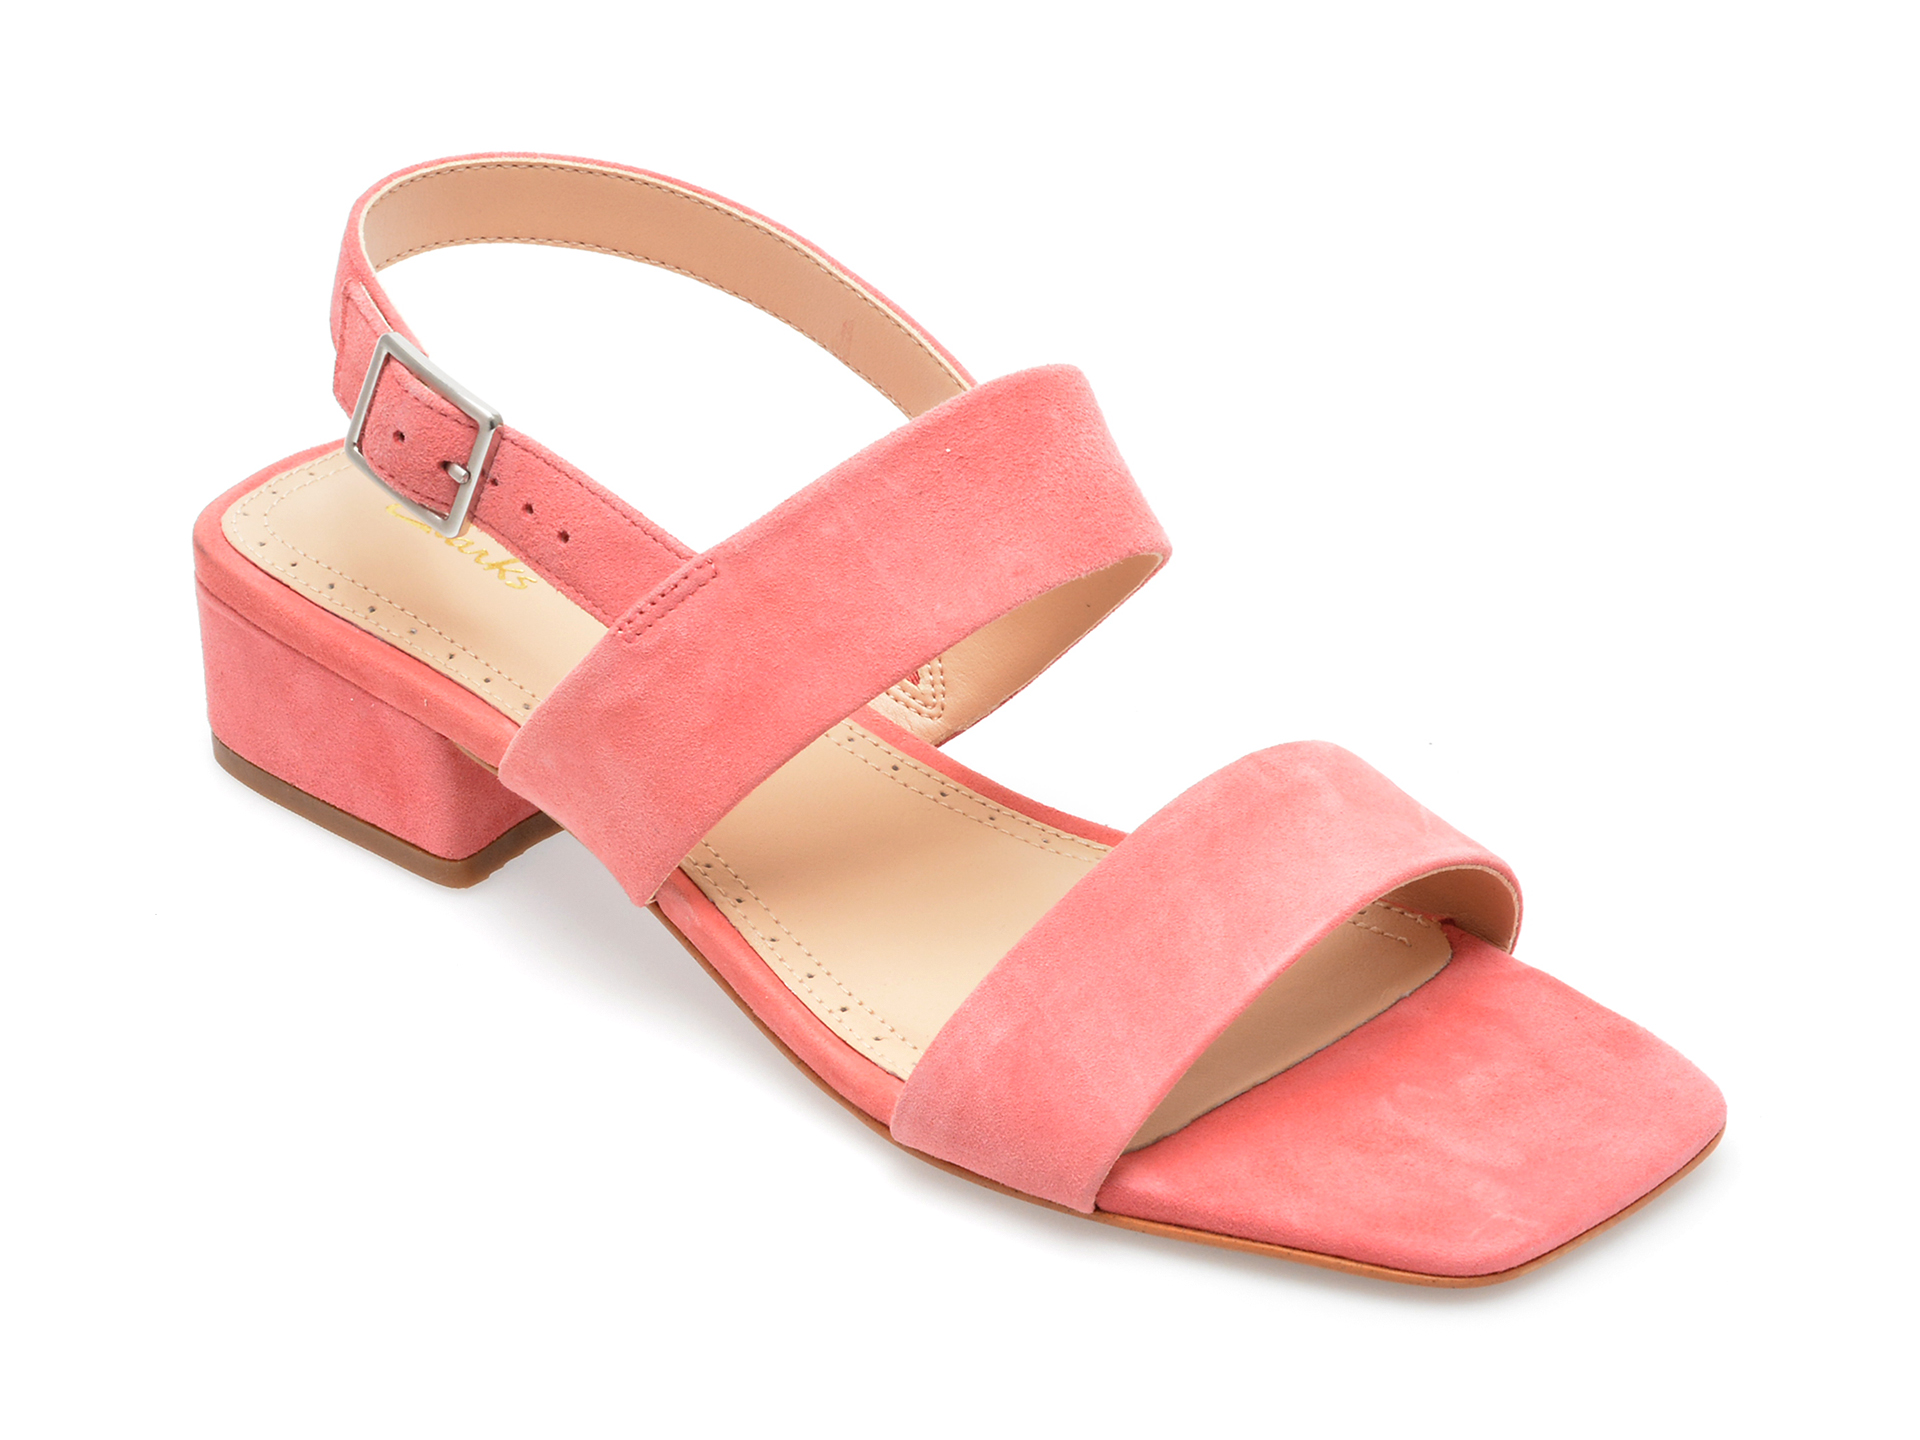 Sandale CLARKS roz, SEREN25 STRAP 0912, din piele intoarsa Answear 2023-09-28